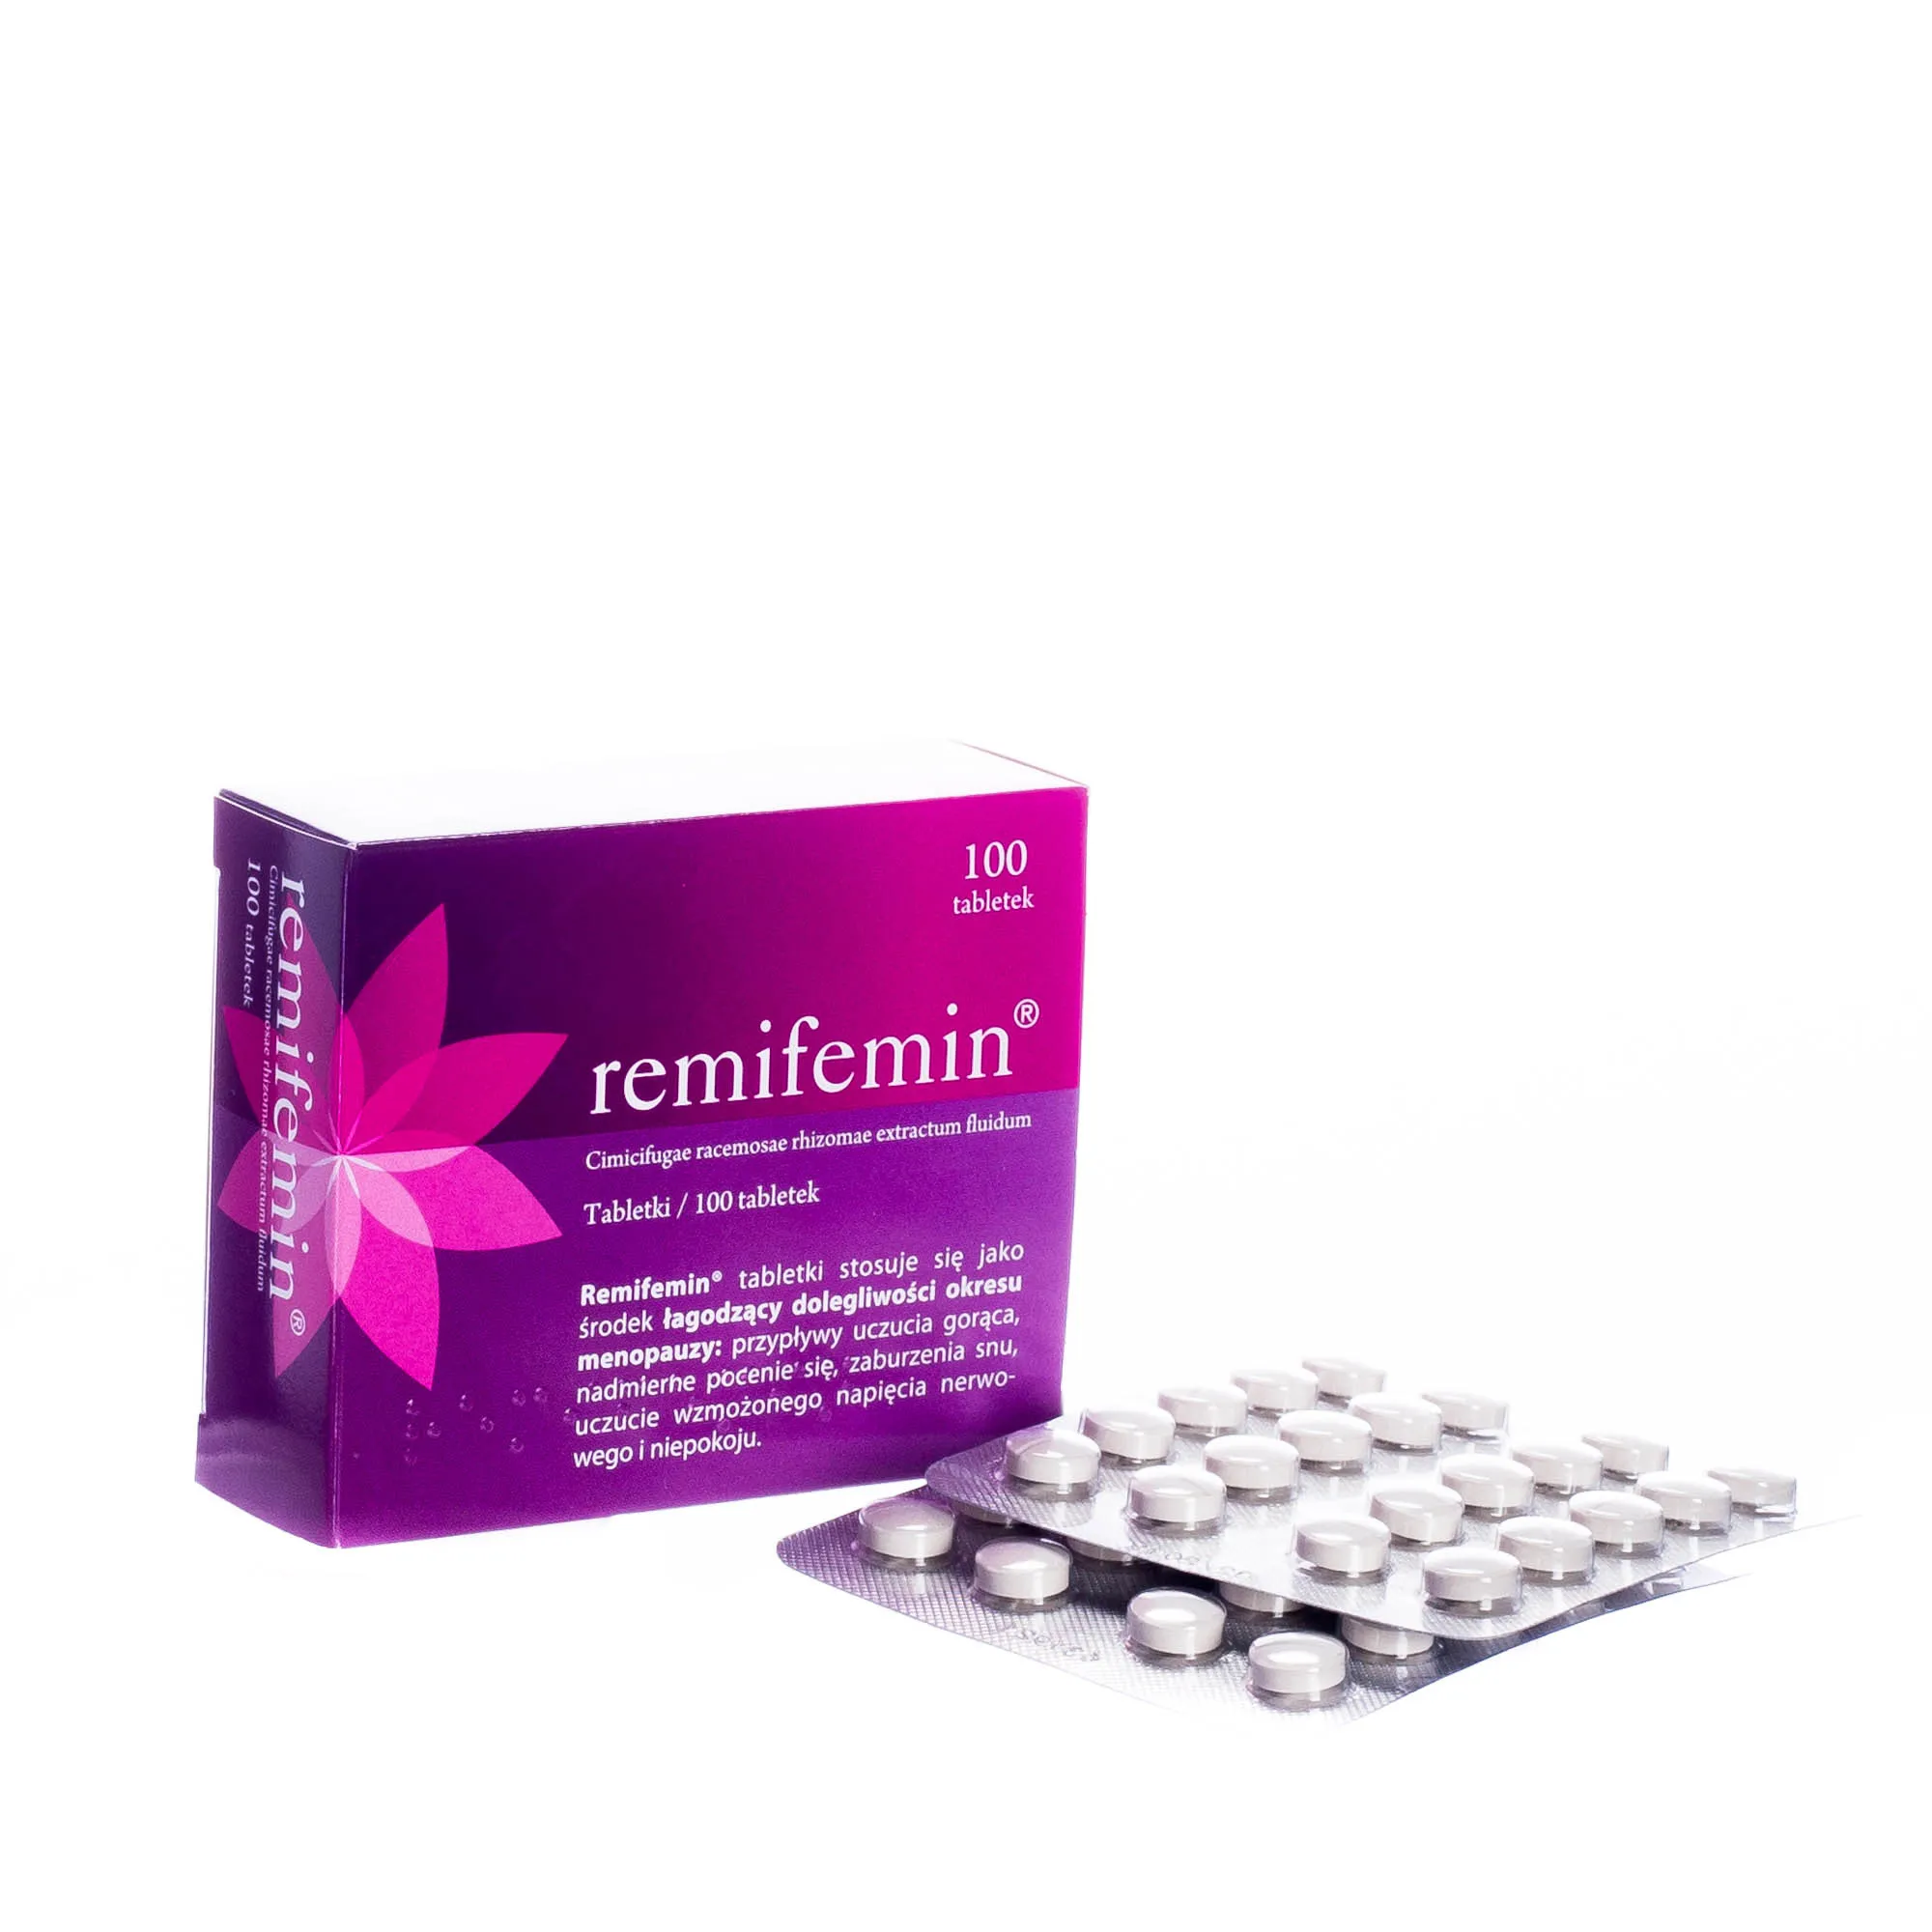 Remifemin, cimicifugae racemosae rhizomae extractum fluidum, 100 tabletek